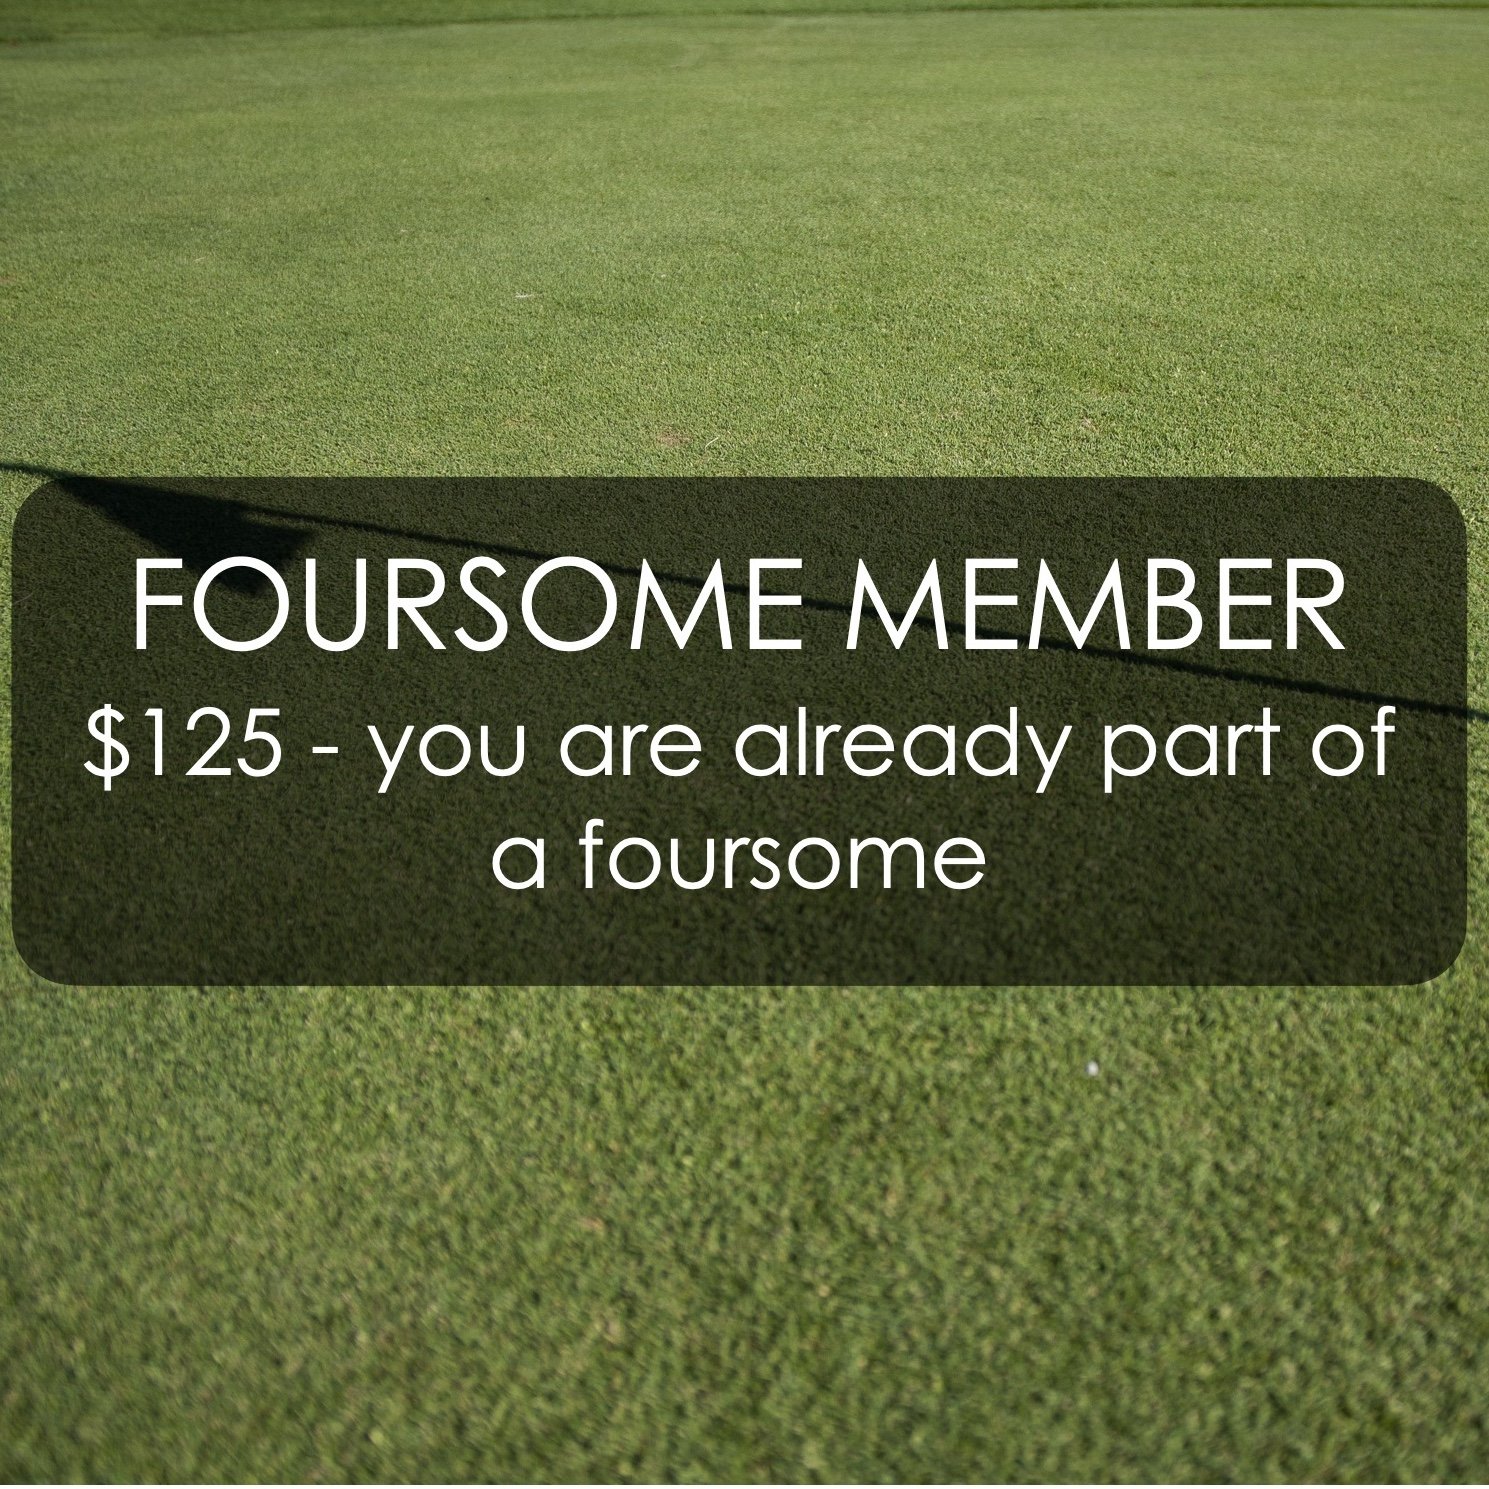 Golf Tournament website foursome member - 125.jpg